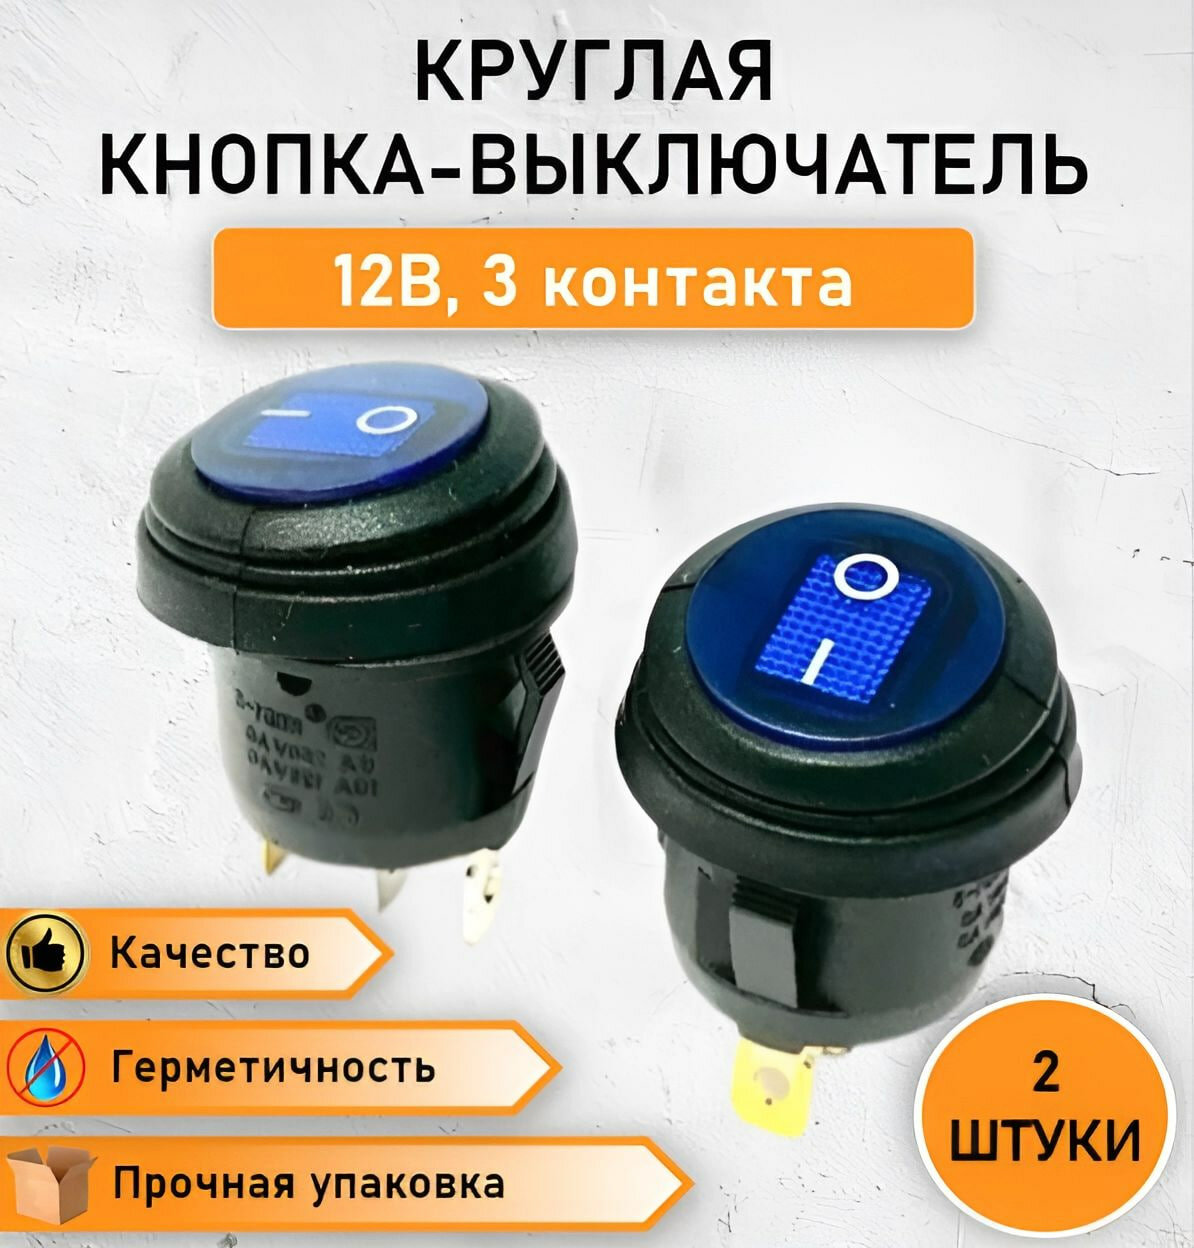 2 ШТ. Герметичная круглая кнопка - выключатель переключатель влагозащищенный ON-OFF с синей подсветкой 6А 250V АС / 10А 125V АС трехконтактная 1 позиция